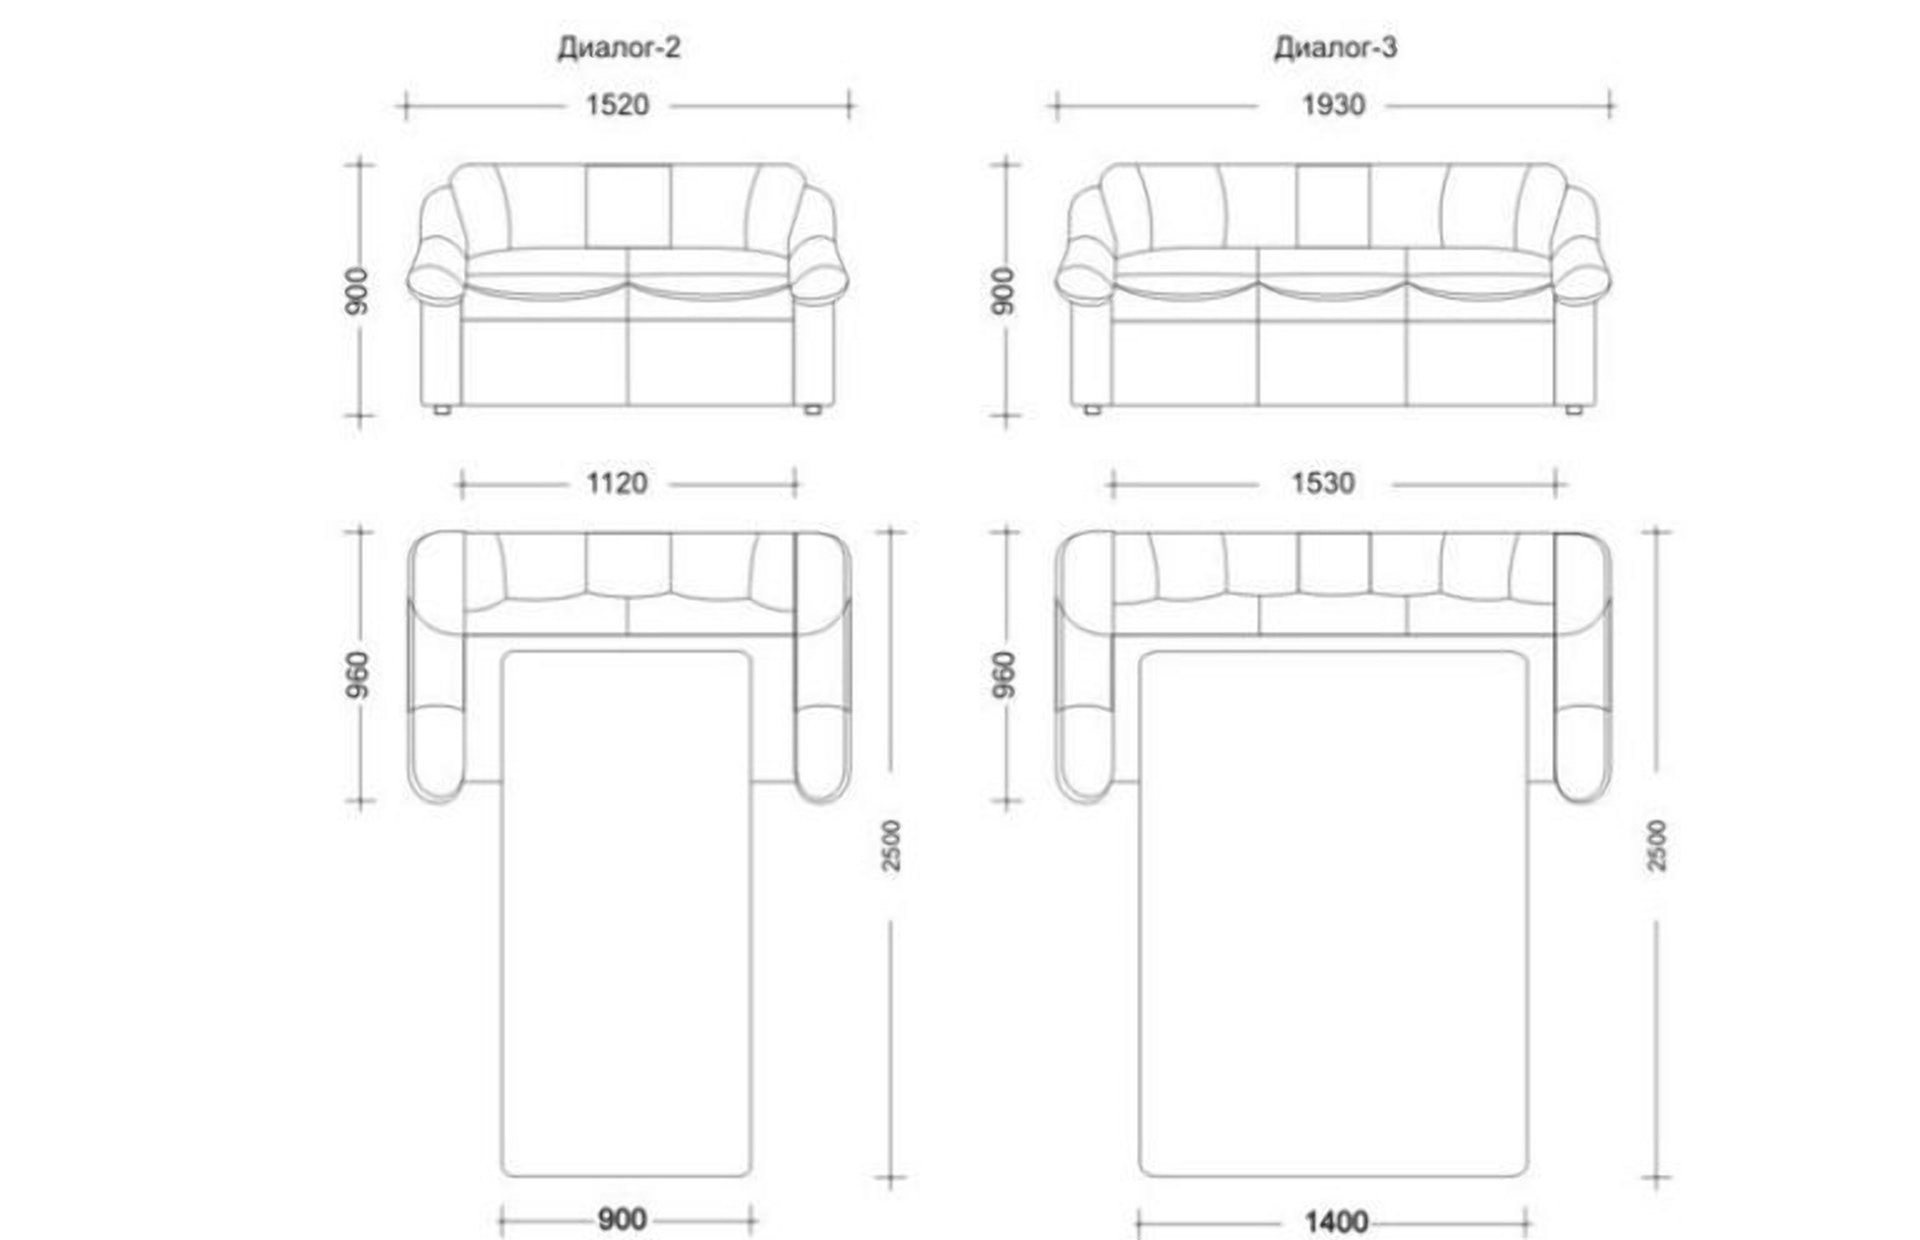 Размеры разложенного дивана